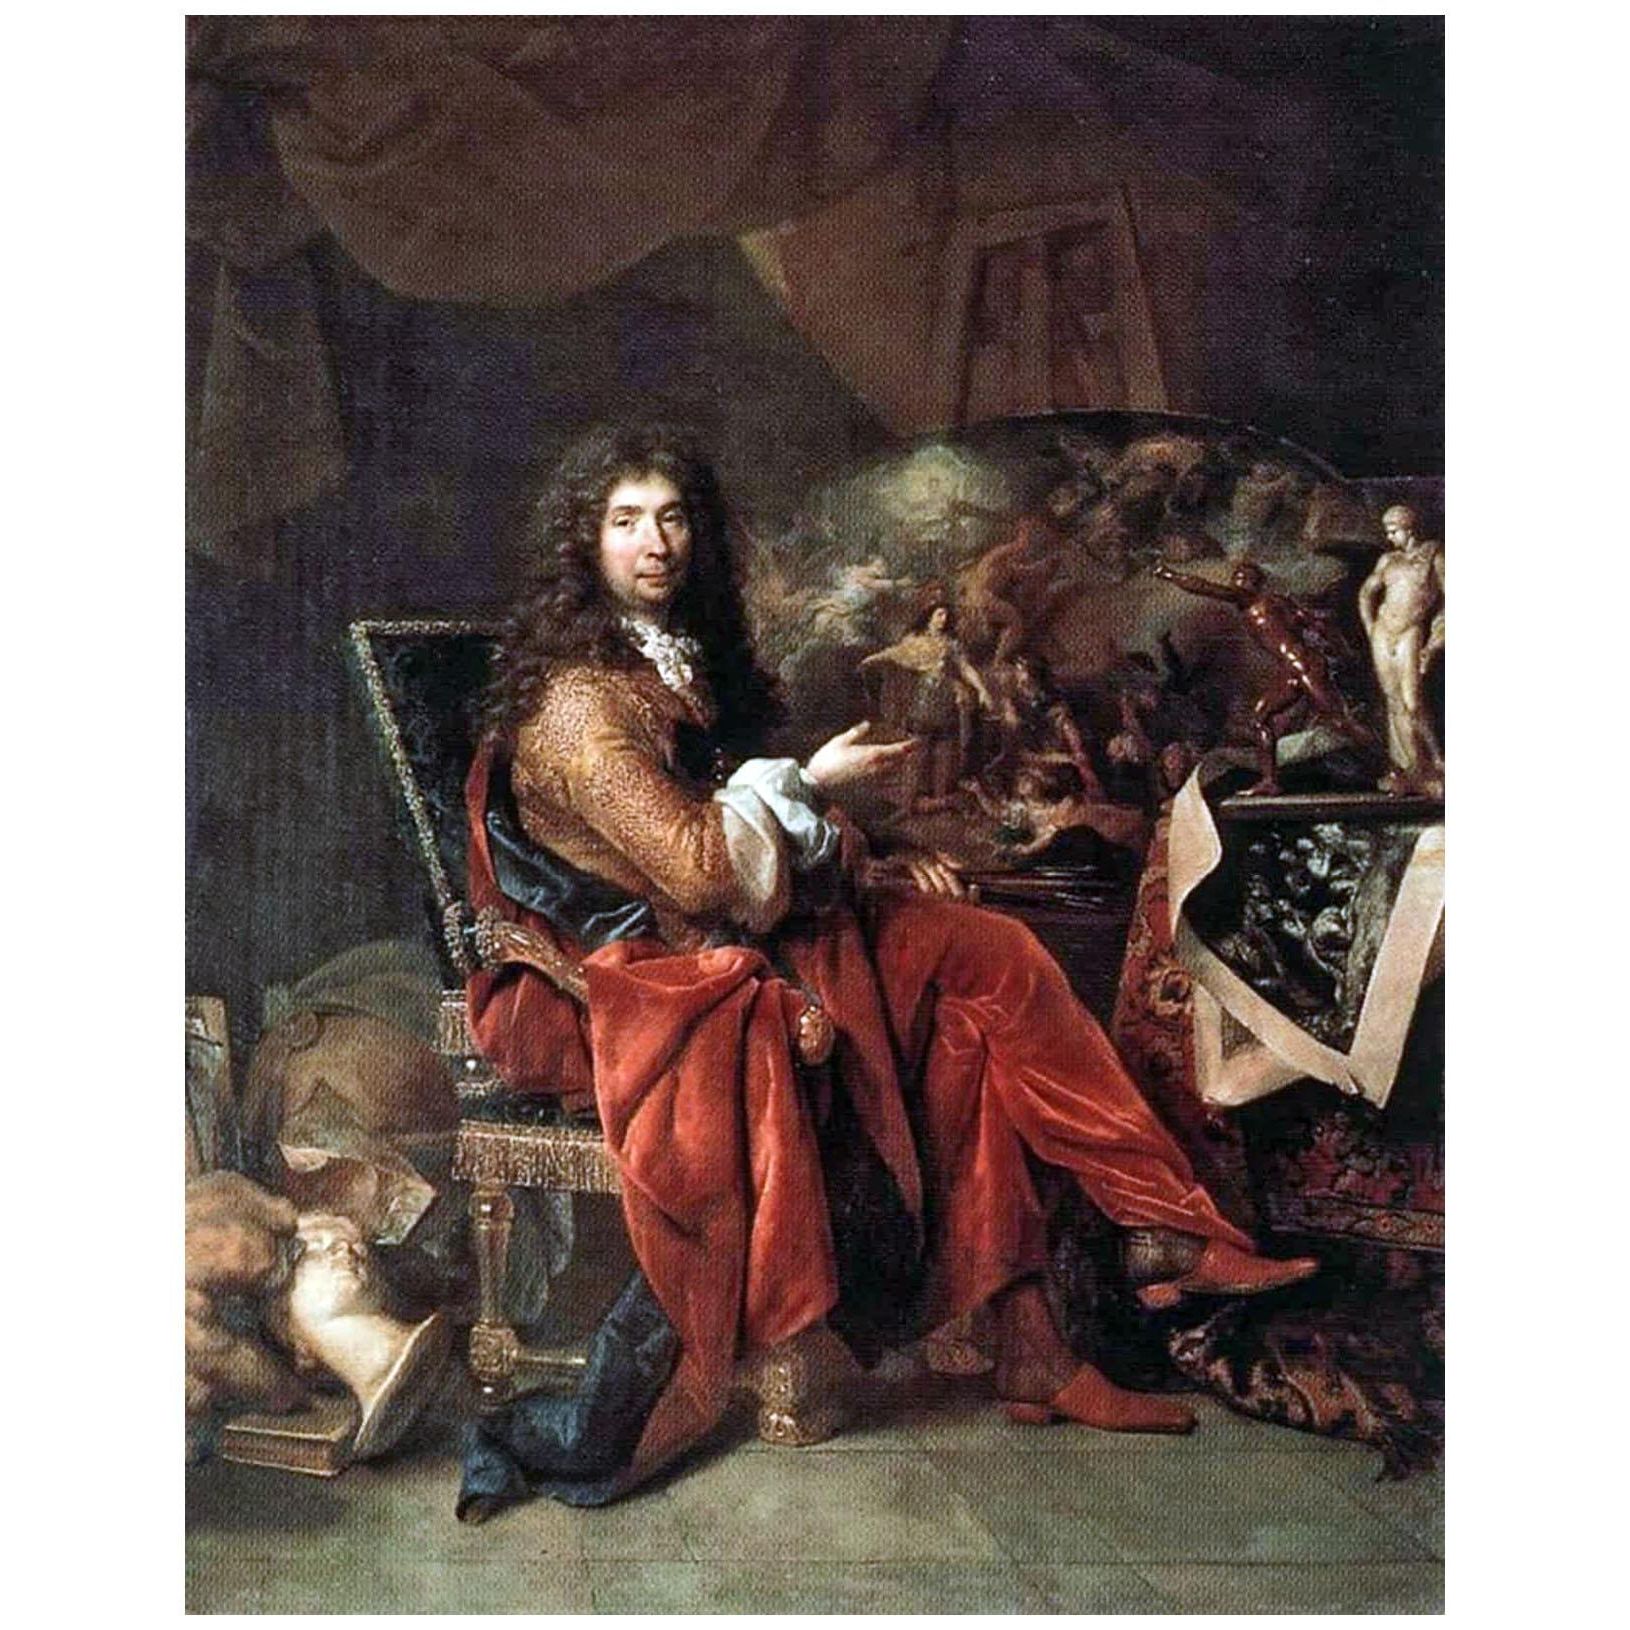 Nicolas de Largilleer. Charles Le Brun. 1683. Louvre